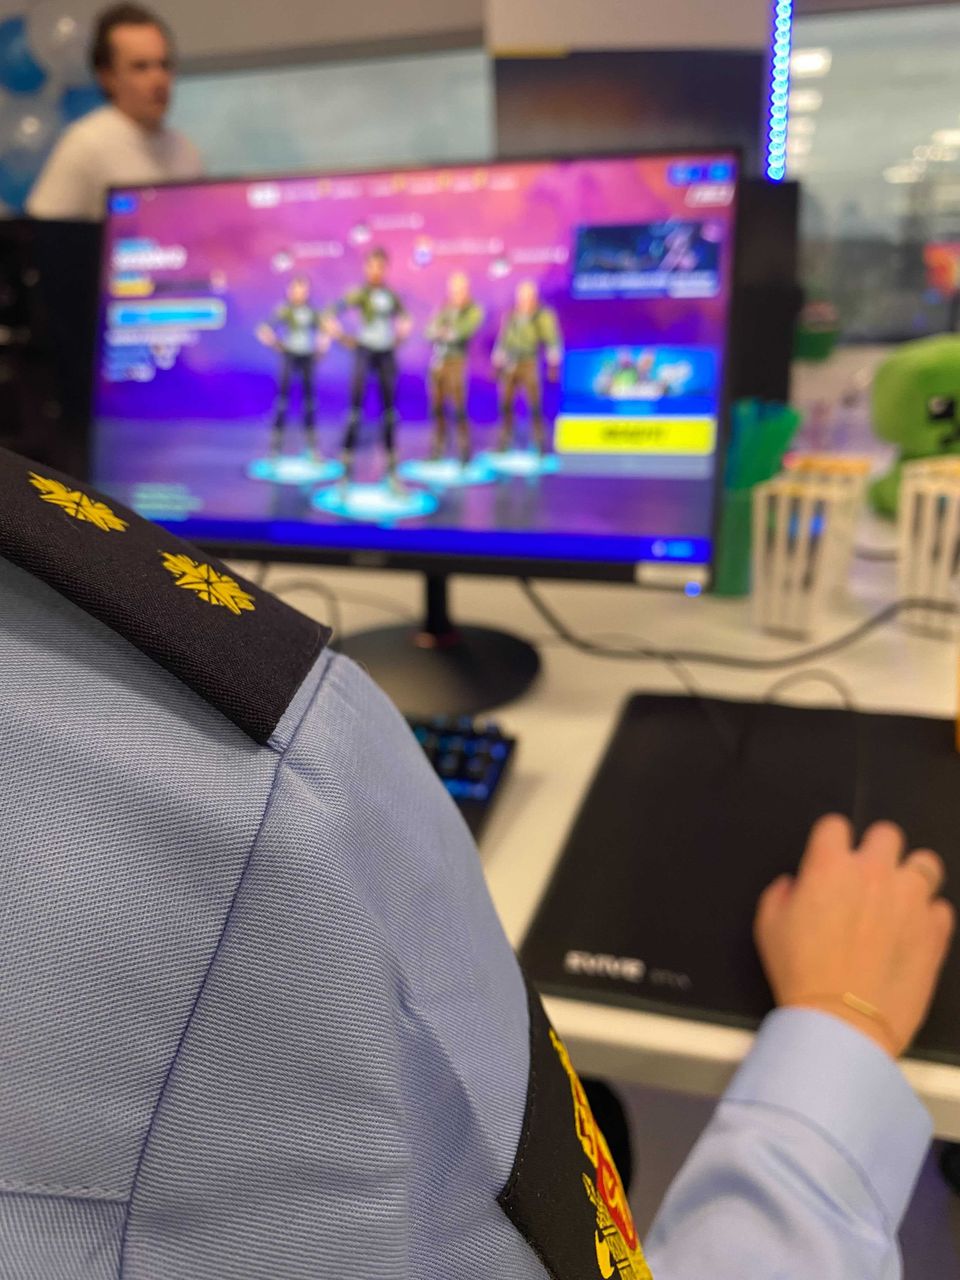 Vi ser armen til en politibetjent i uniform som sitter foran en PC-skjerm som viser spillfigurer.